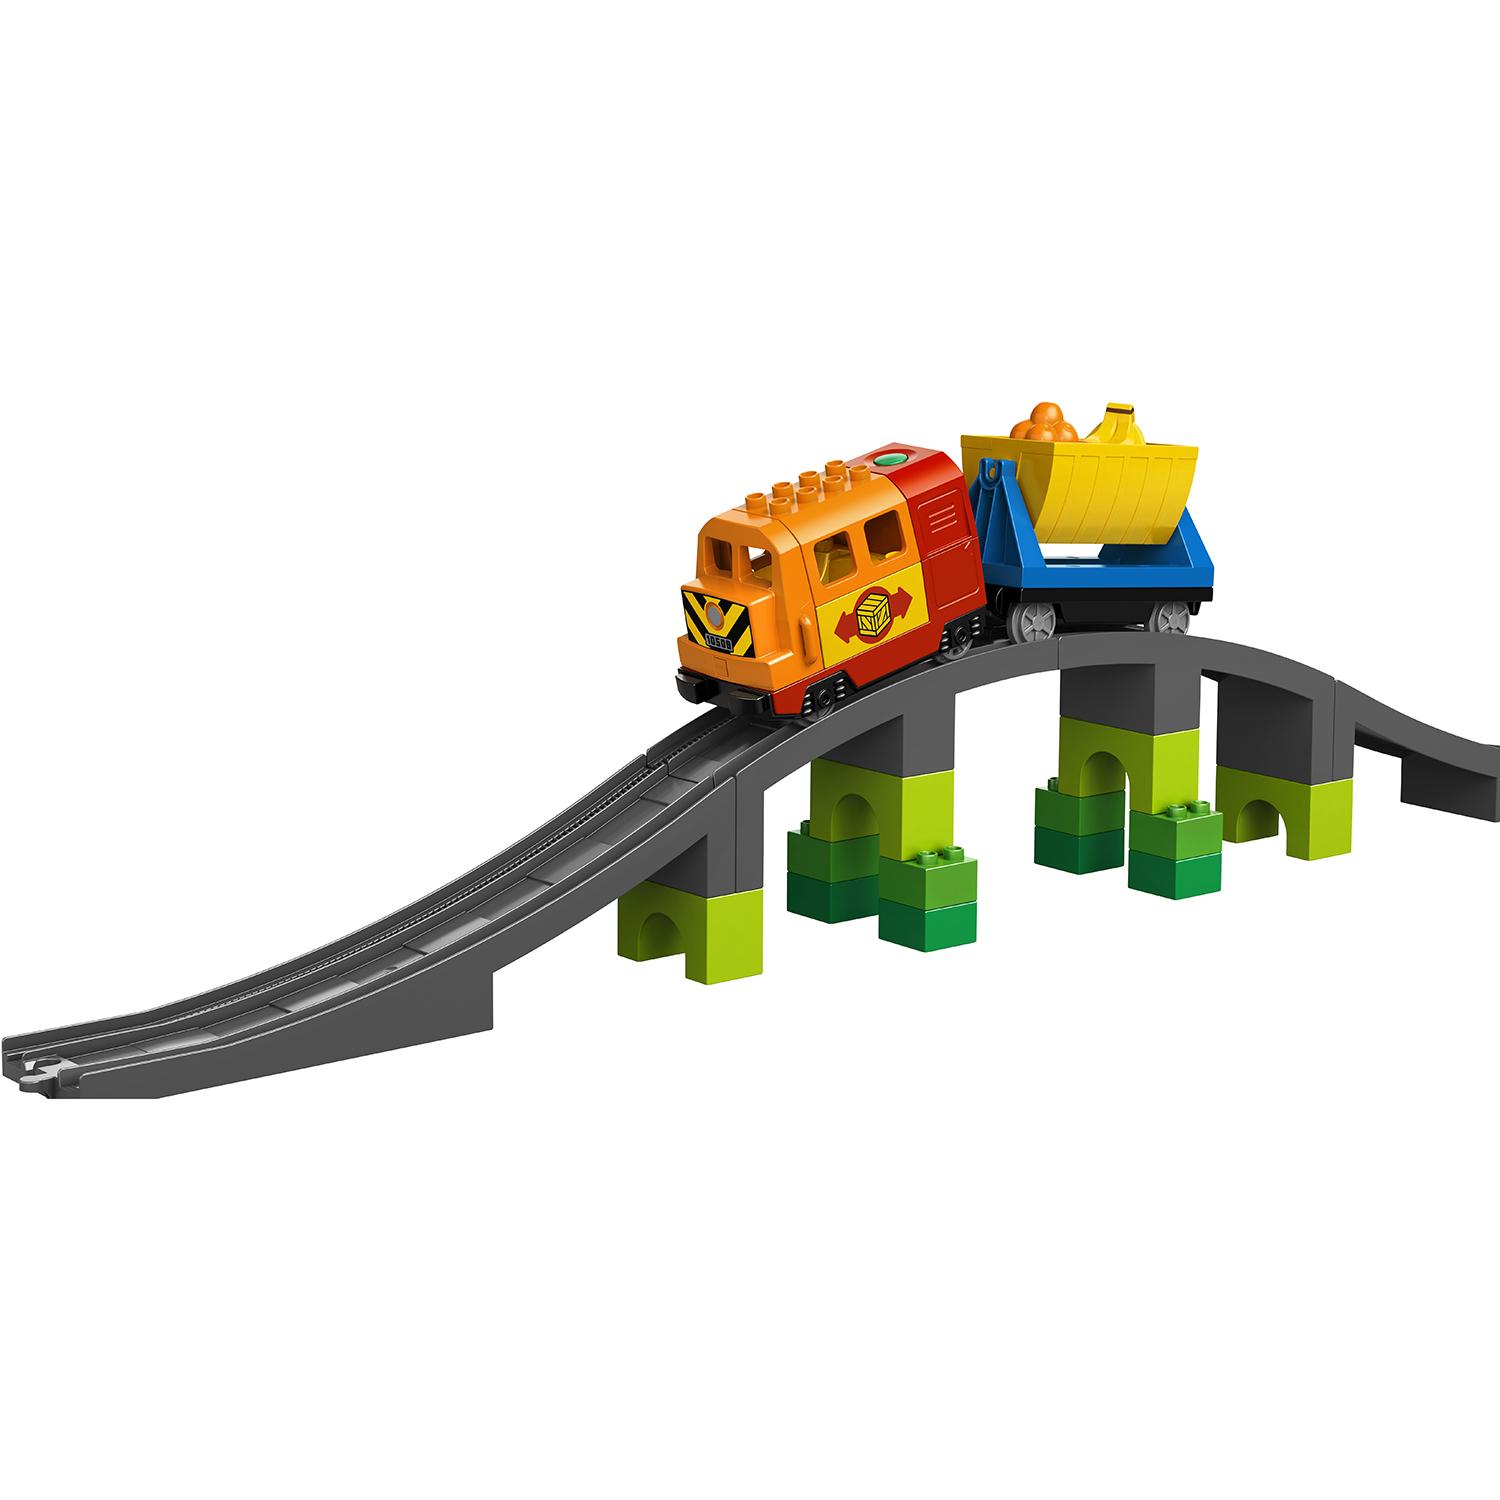 Lego Duplo 10508 Большой поезд